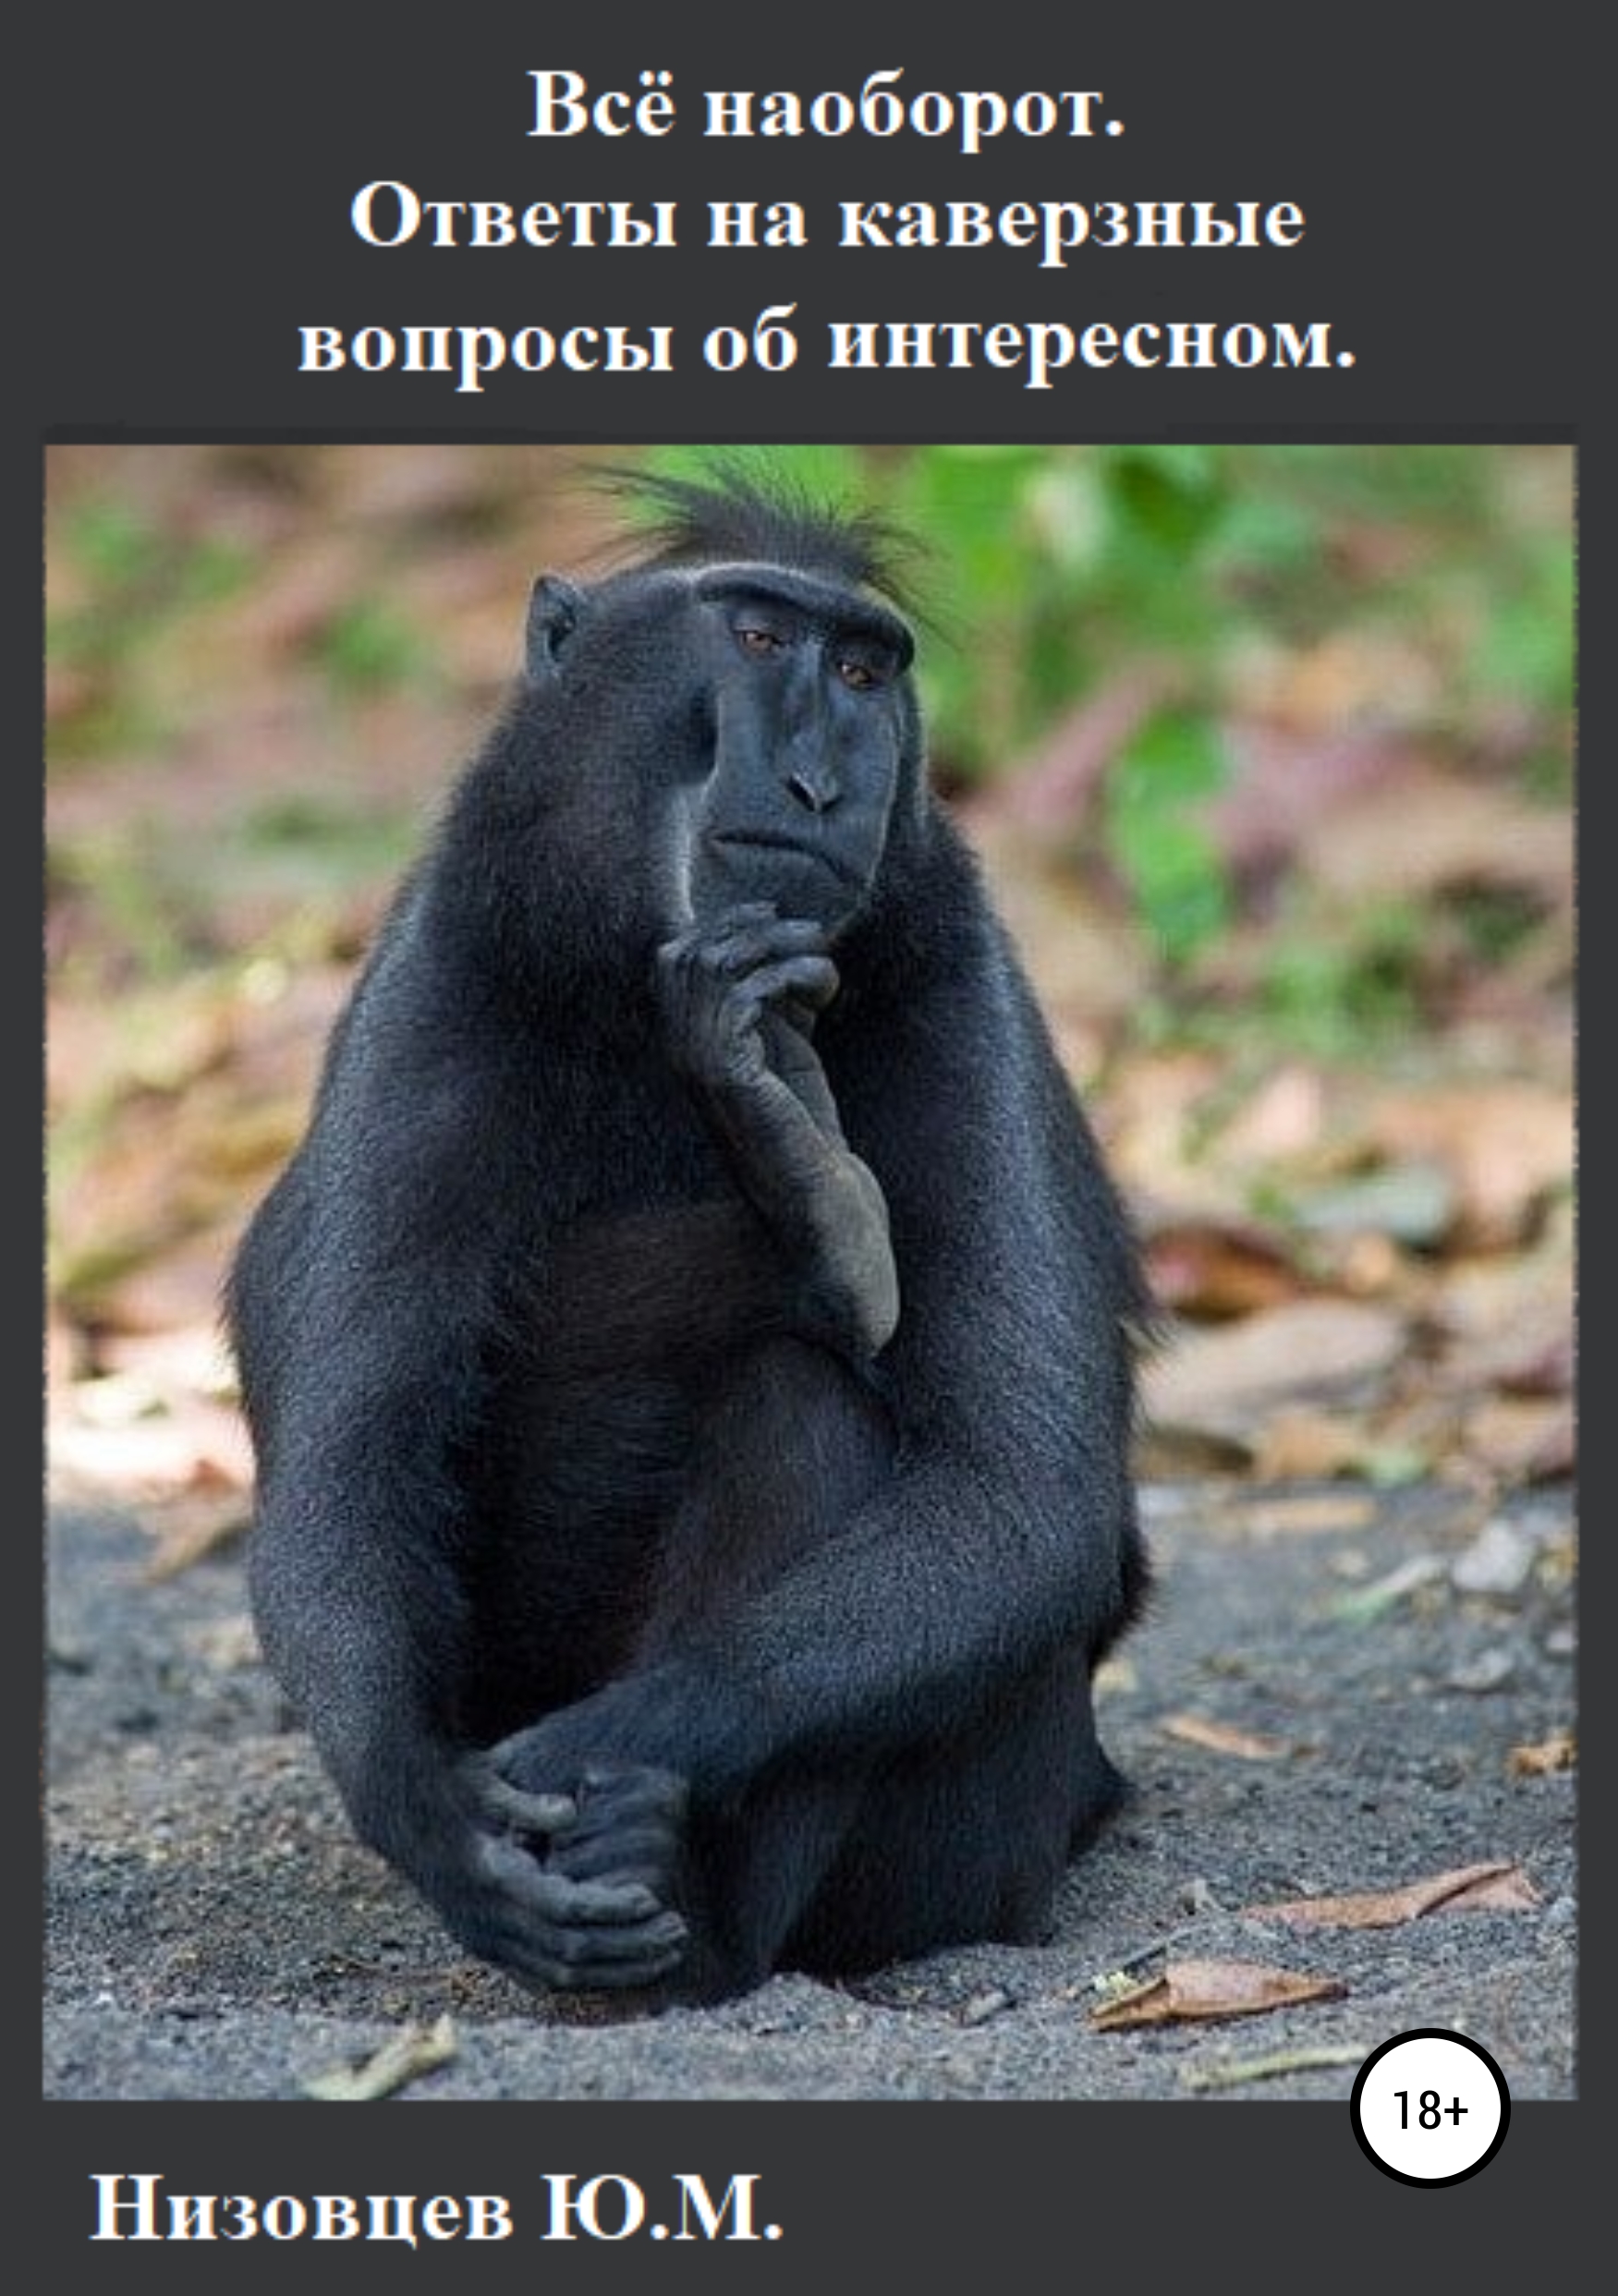 Мечтаю быть высокой. Задумчивый шимпанзе. Задумчивые лица животных. Обезьяна задумалась. Животные приколы.